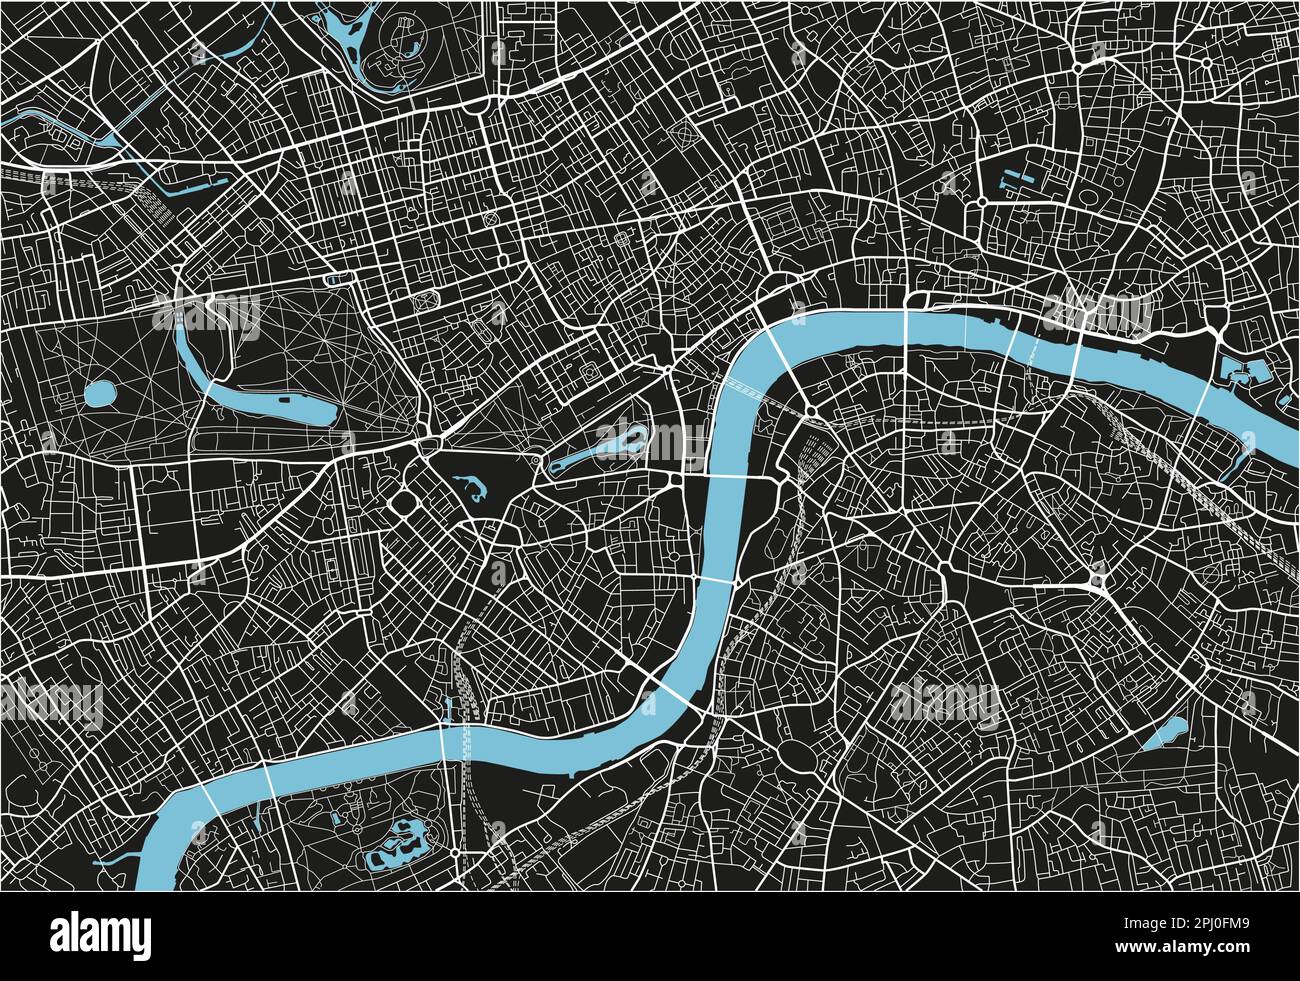 Mappa vettoriale in bianco e nero di Londra con livelli separati ben organizzati. Illustrazione Vettoriale